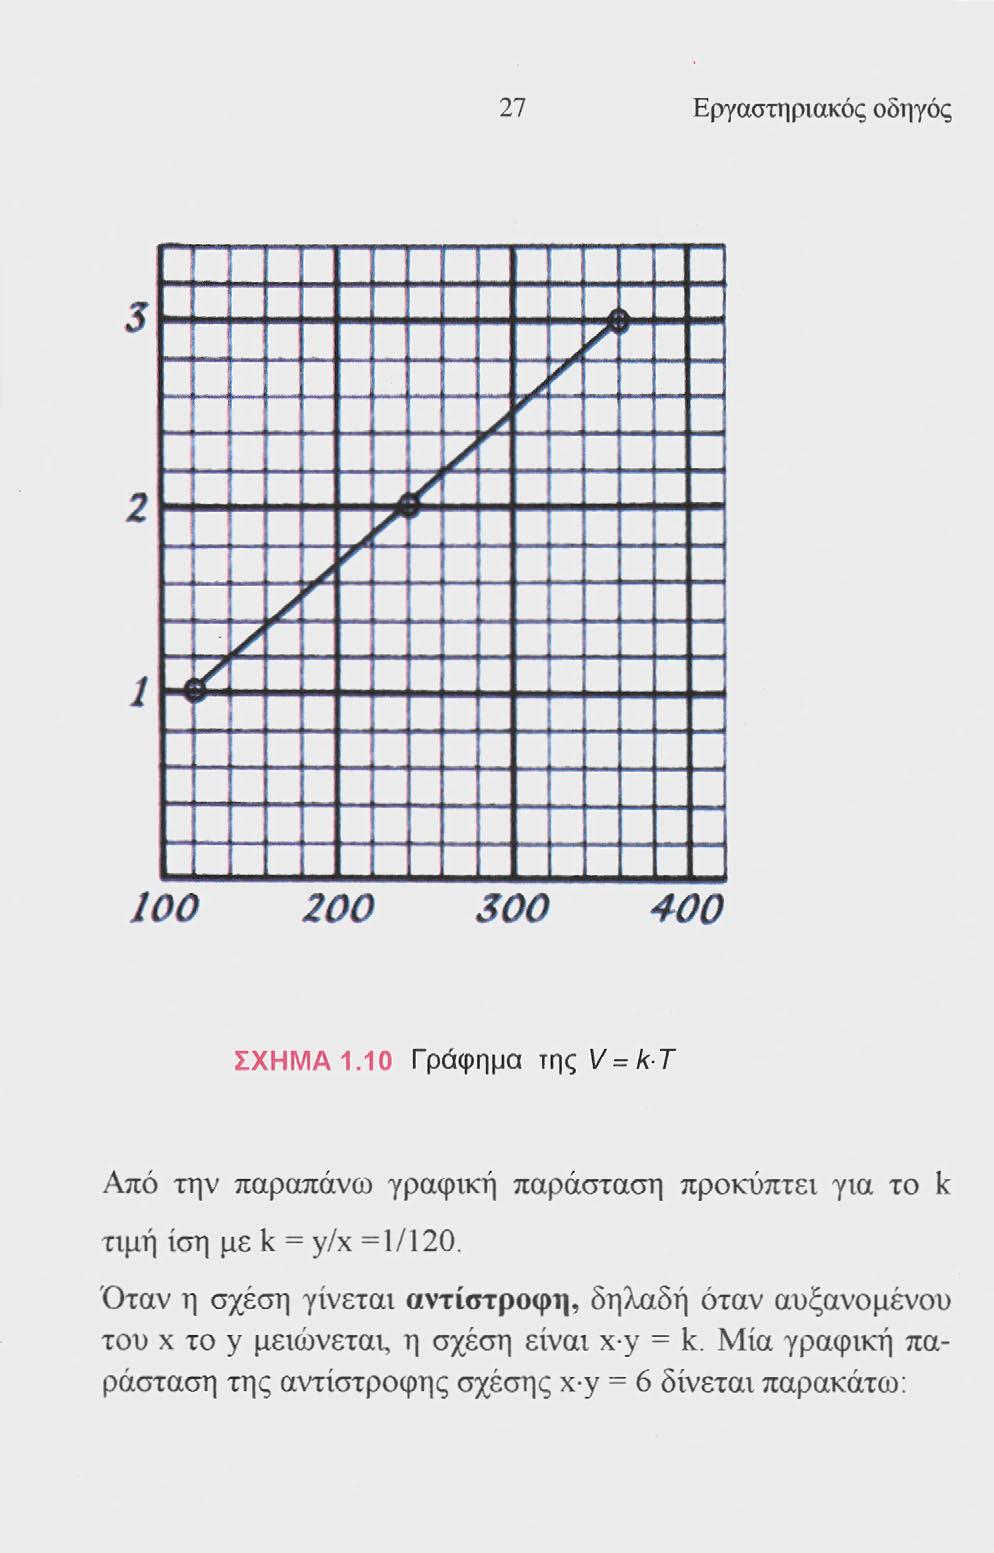 27 Εργαστηριακός οδηγός J ι 1 ι 100 200 300 400 ΣΧΗΜΑ 1.10 Γράφημα τηςι/ = /(Τ Από την παραπάνω γραφική παράσταση προκύπτει για το k τιμή ίση με k = y/x =1/120.